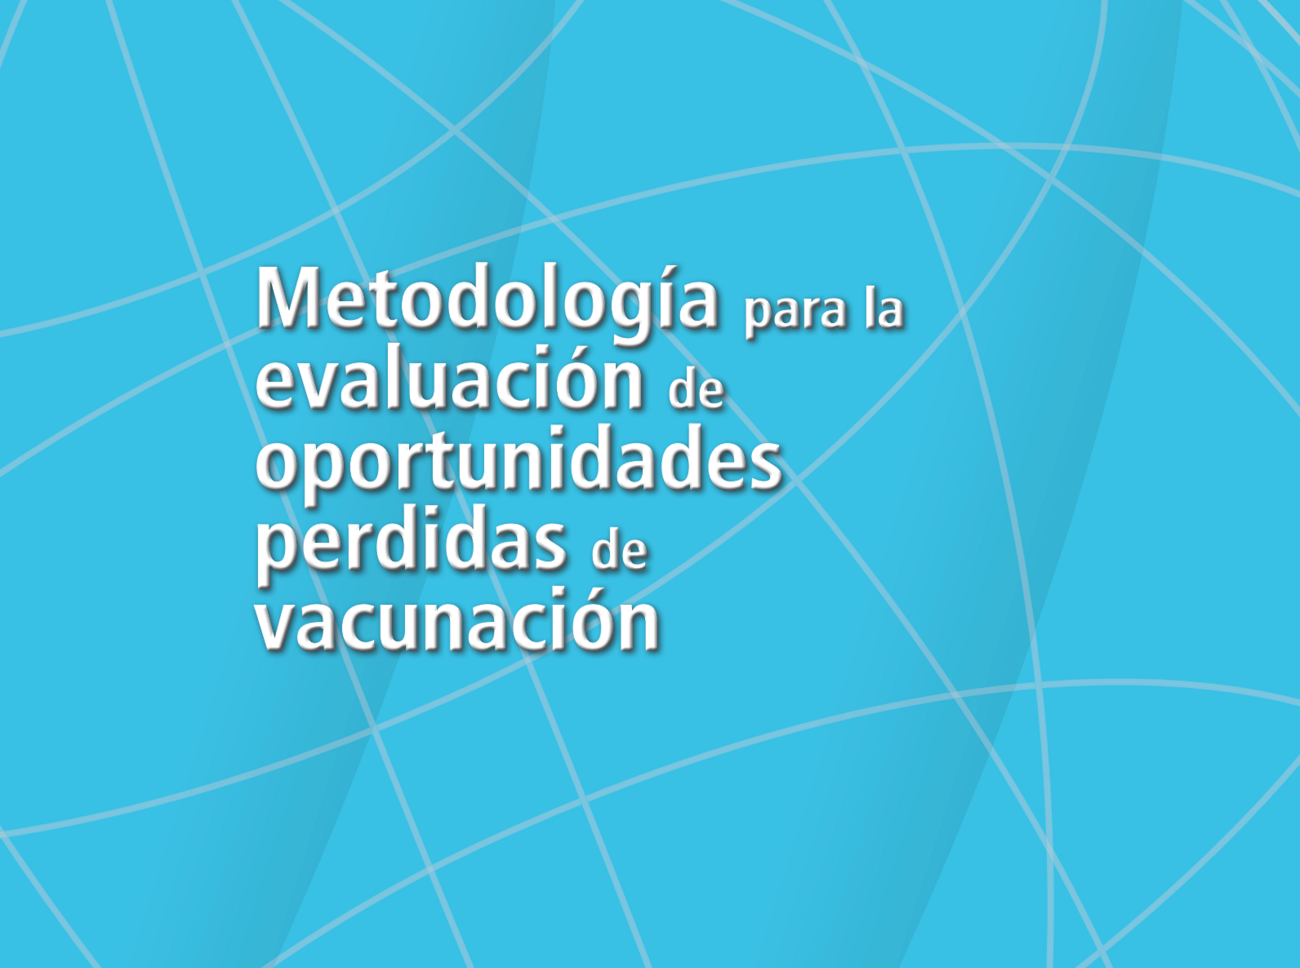 Metodología para la Evaluación de oportunidades perdidas de vacunación, 2014